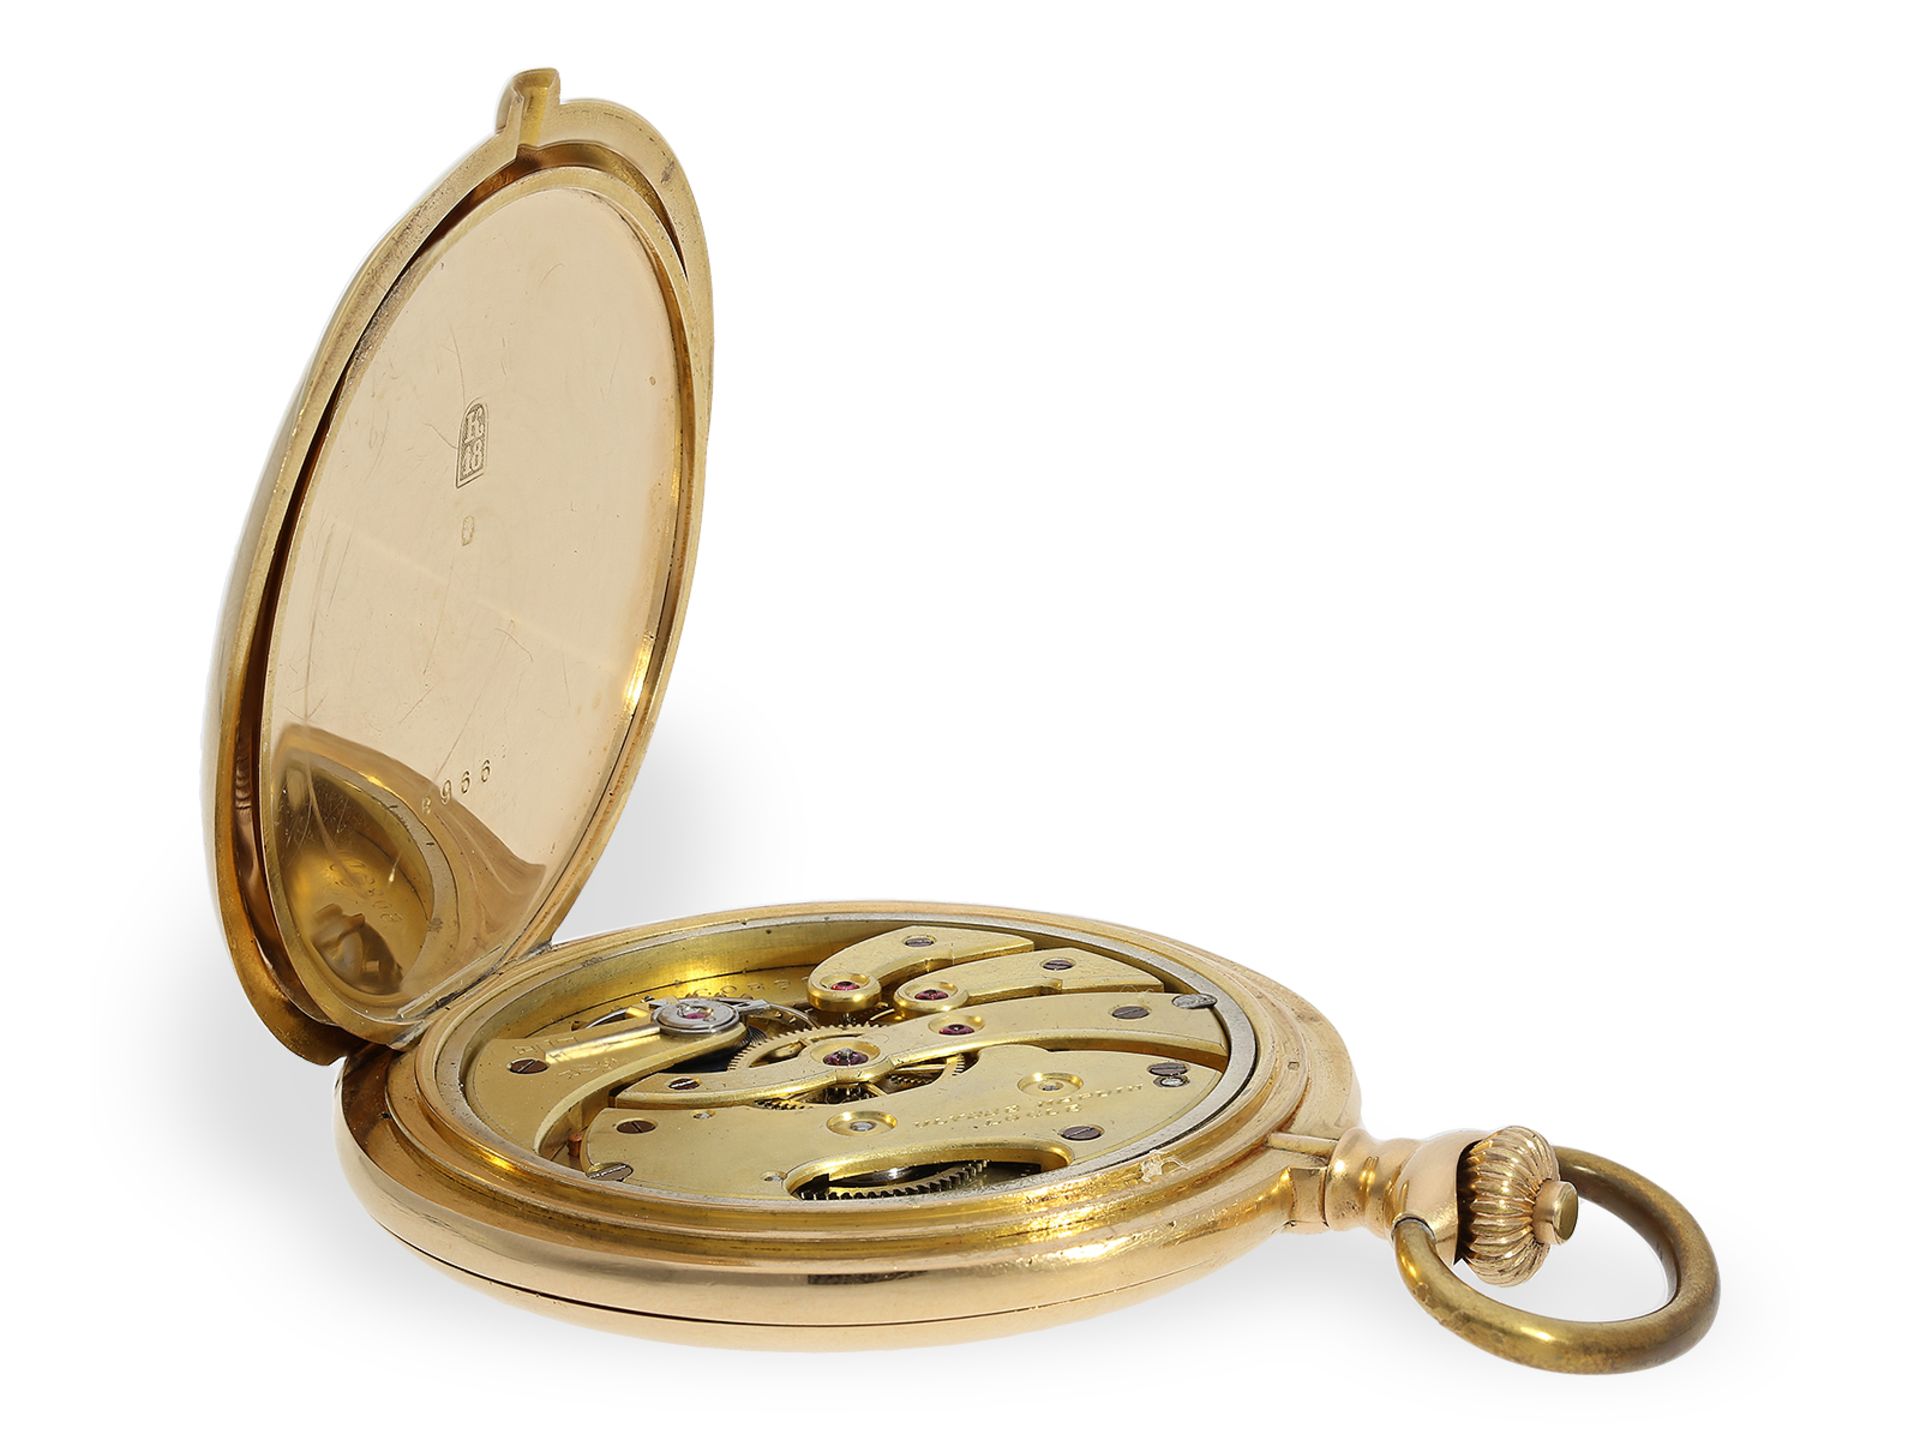 Außergewöhnlich großes Ankerchronometer in seltener 18K Goldausführung, Ulysse Nardin Locle No106809 - Bild 3 aus 8